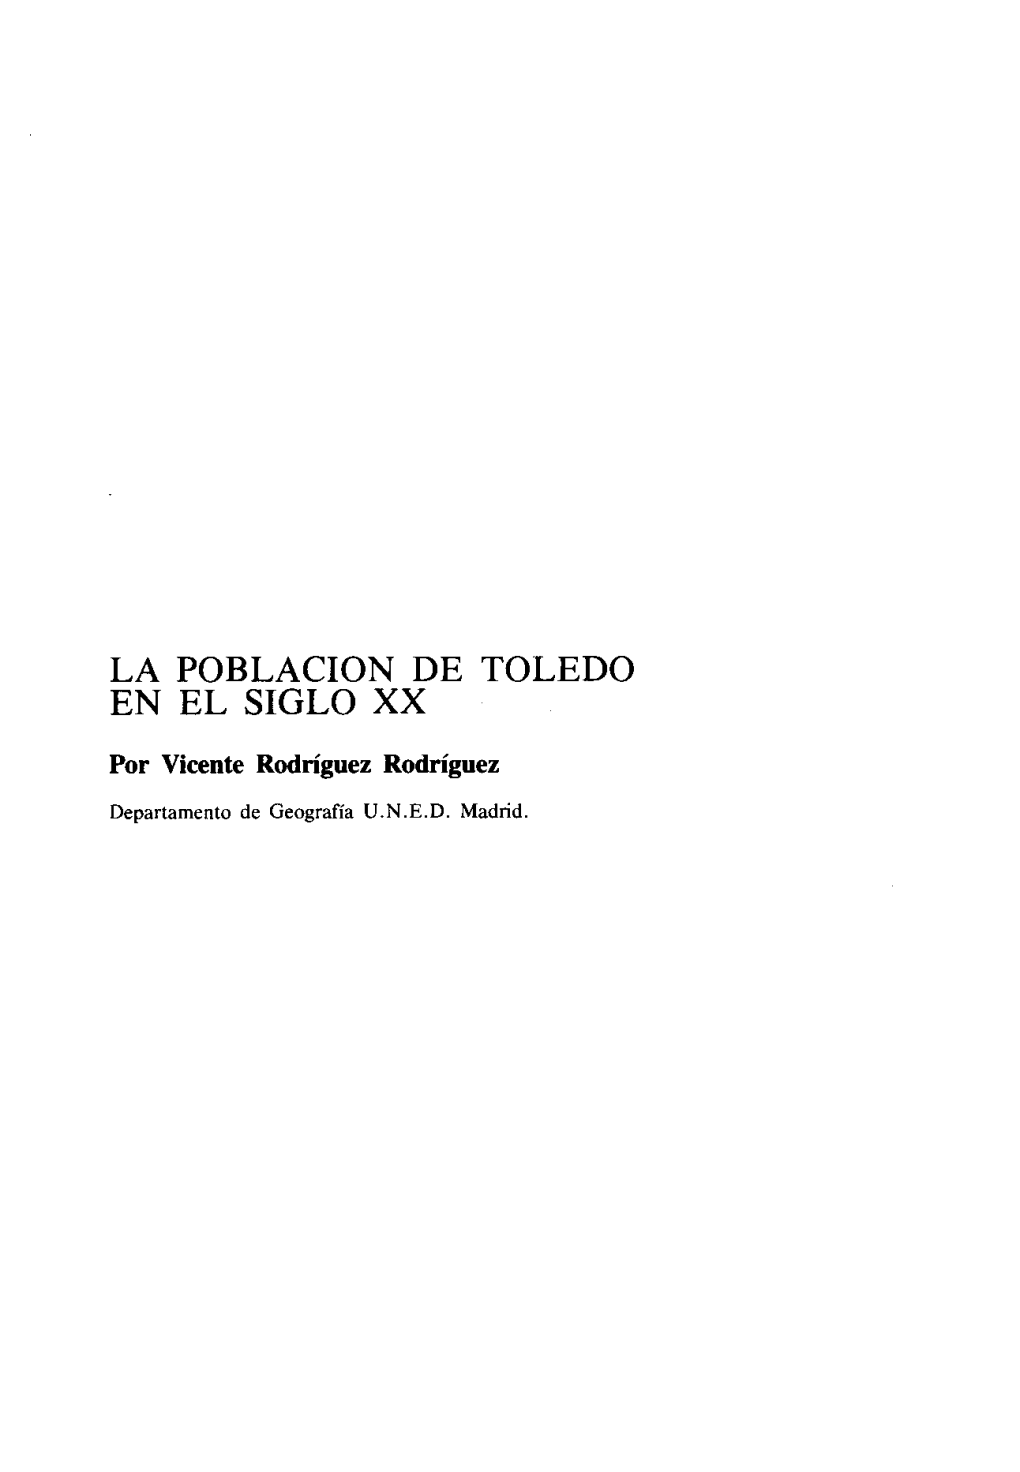 La Poblacion De Toledo En El Siglo Xx